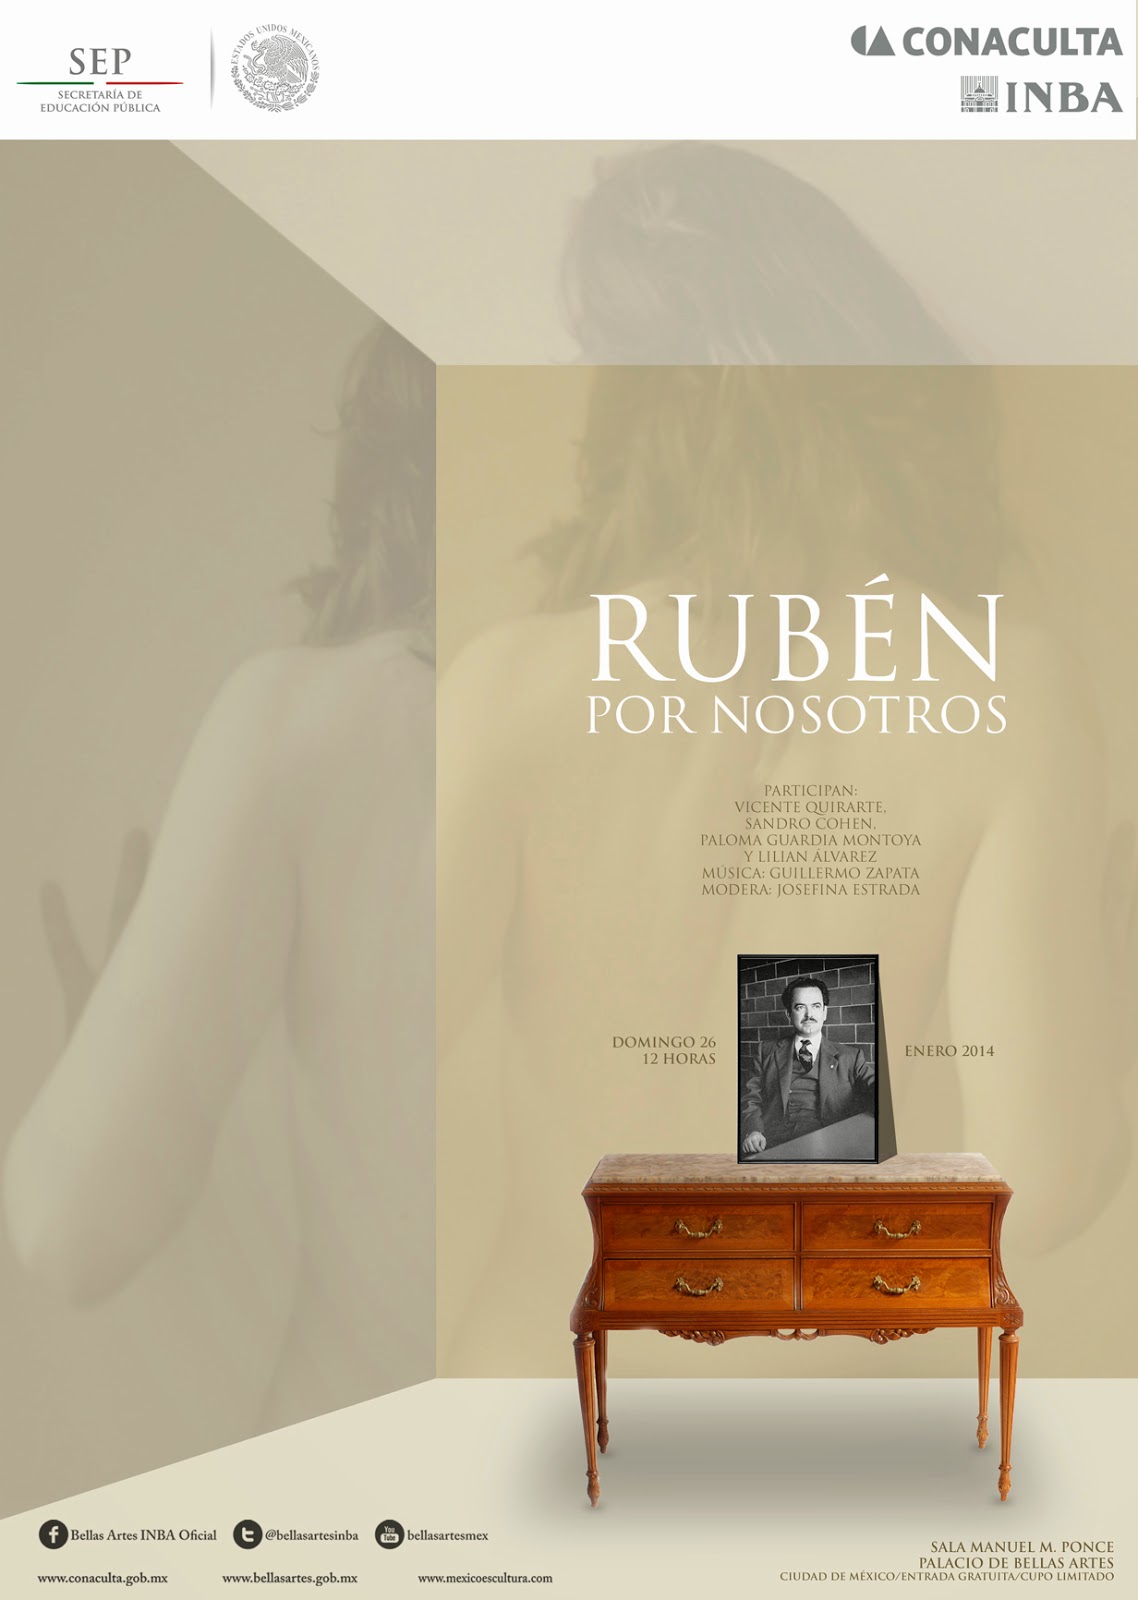 Homenaje a Rubén Bonifaz Nuño en el Palacio de Bellas Artes